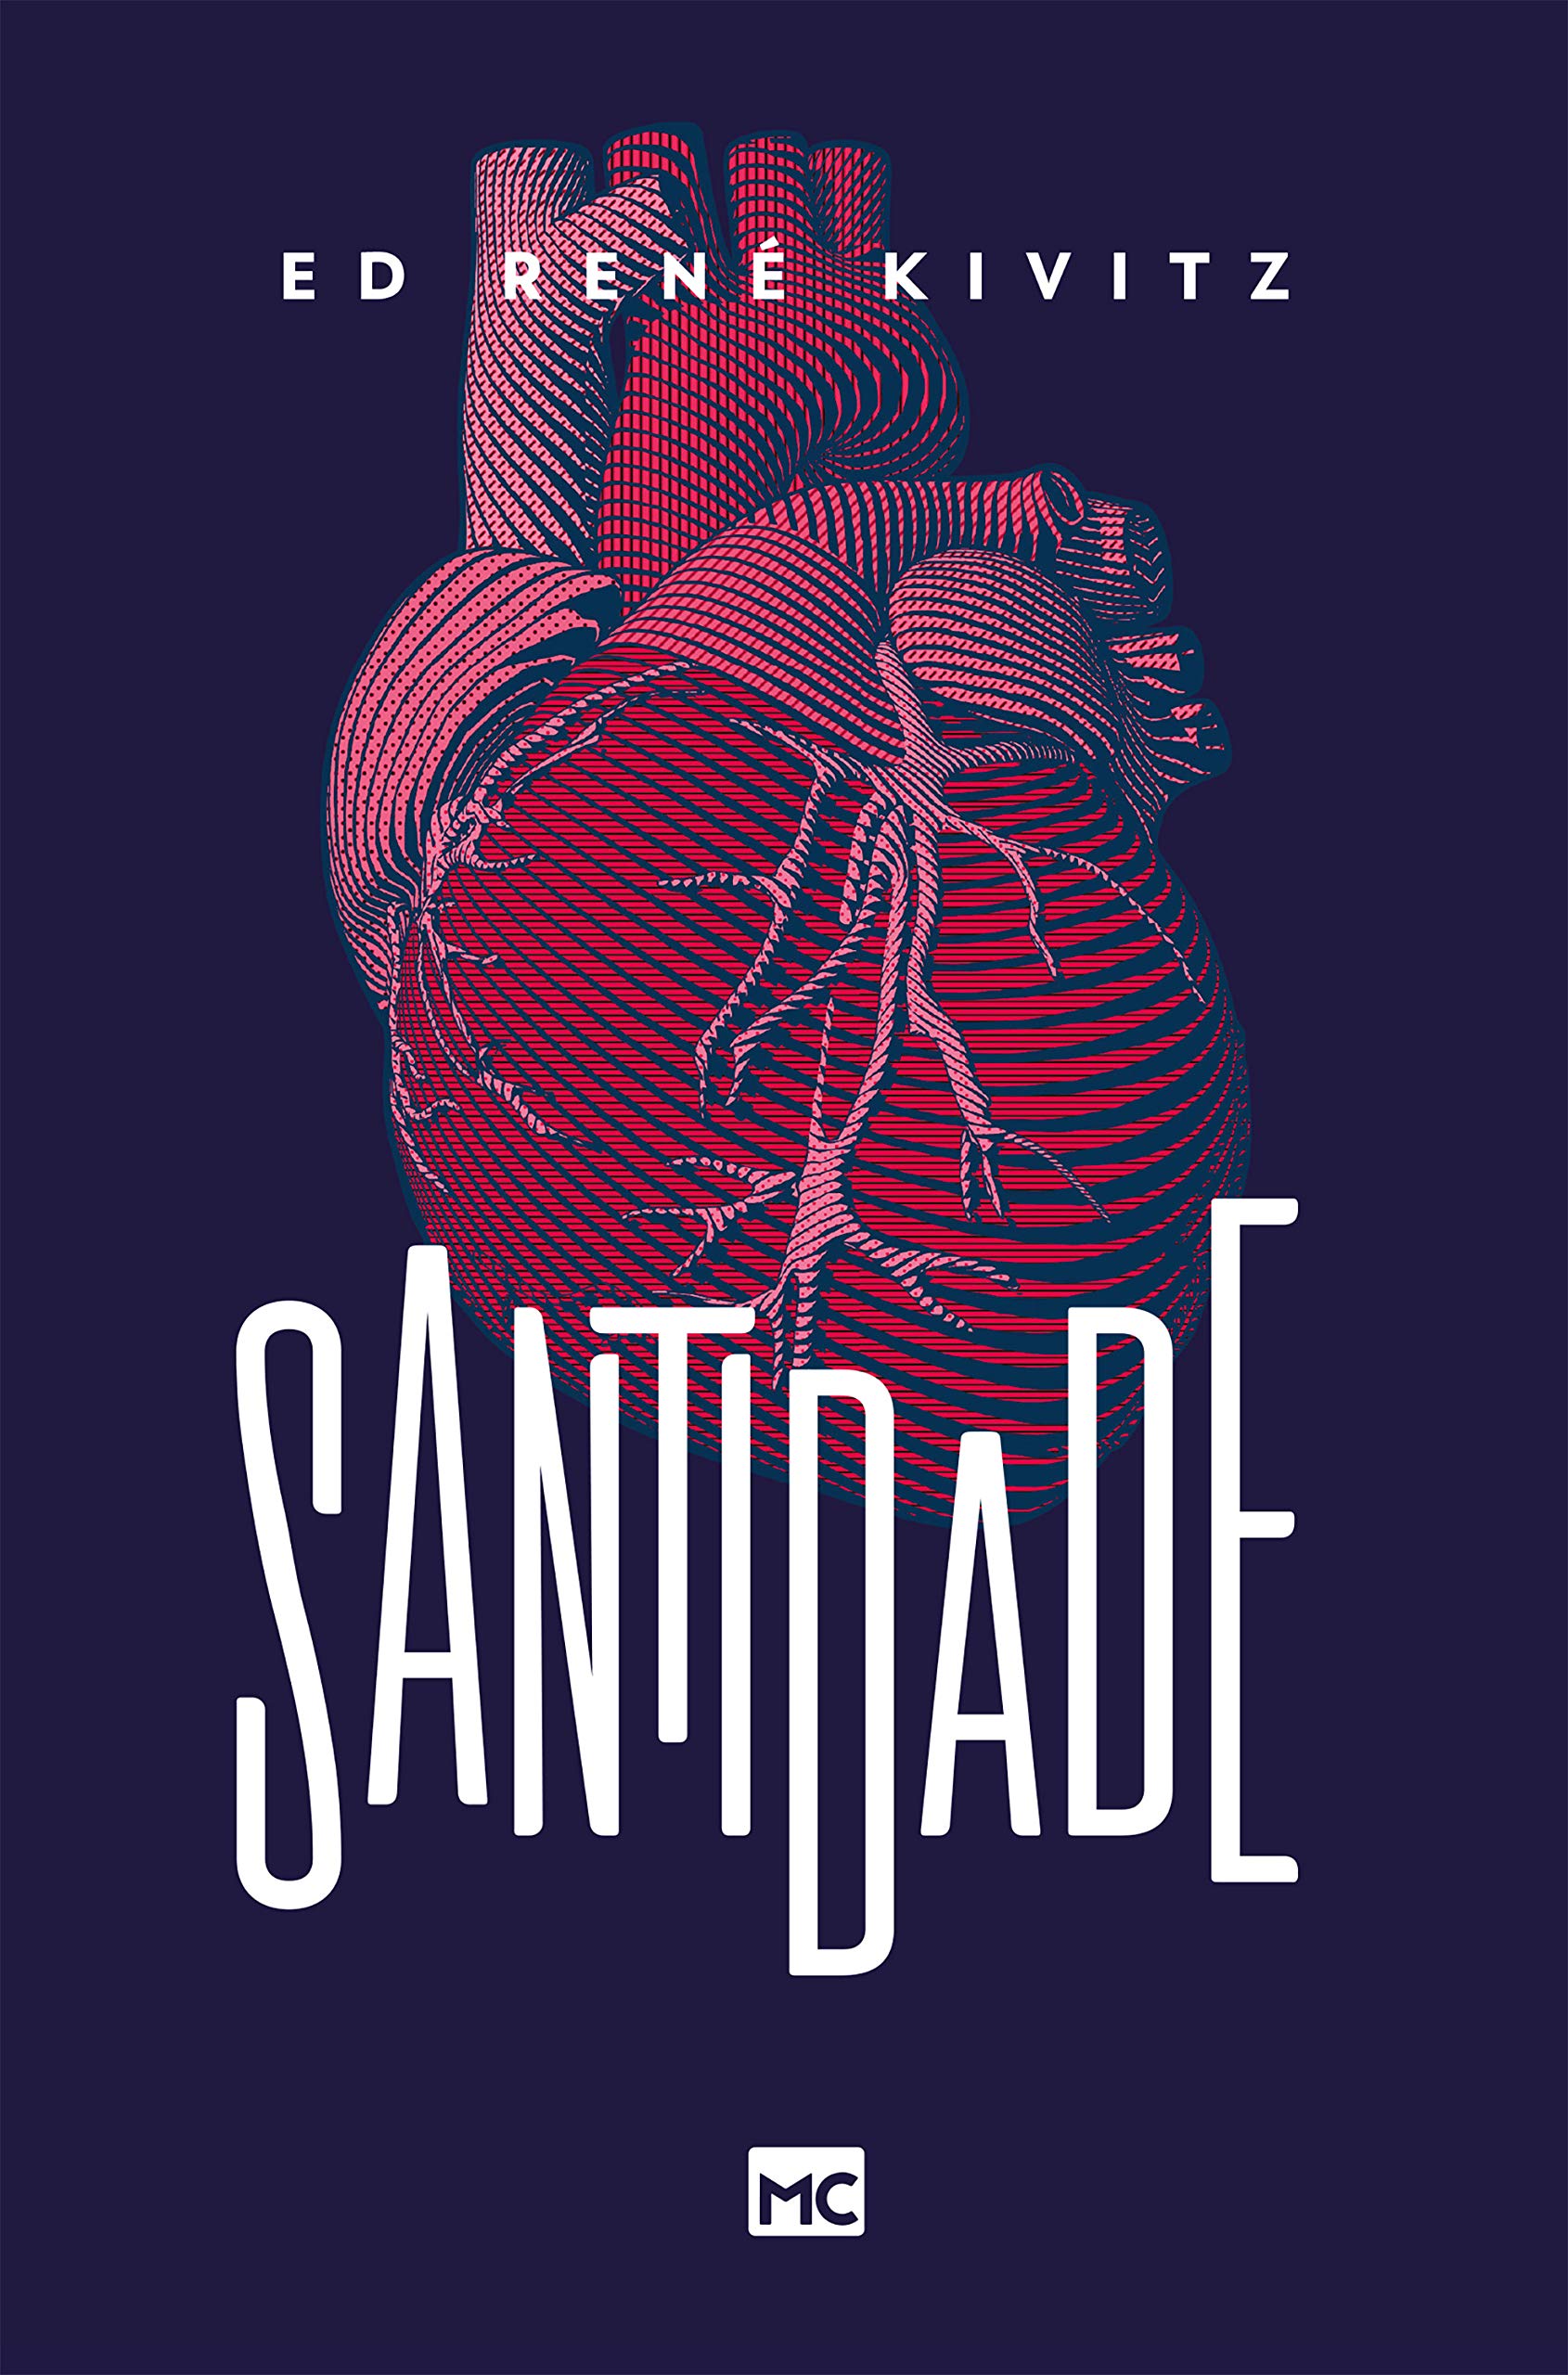 Livro 'Santidade' por Ed René Kivitz